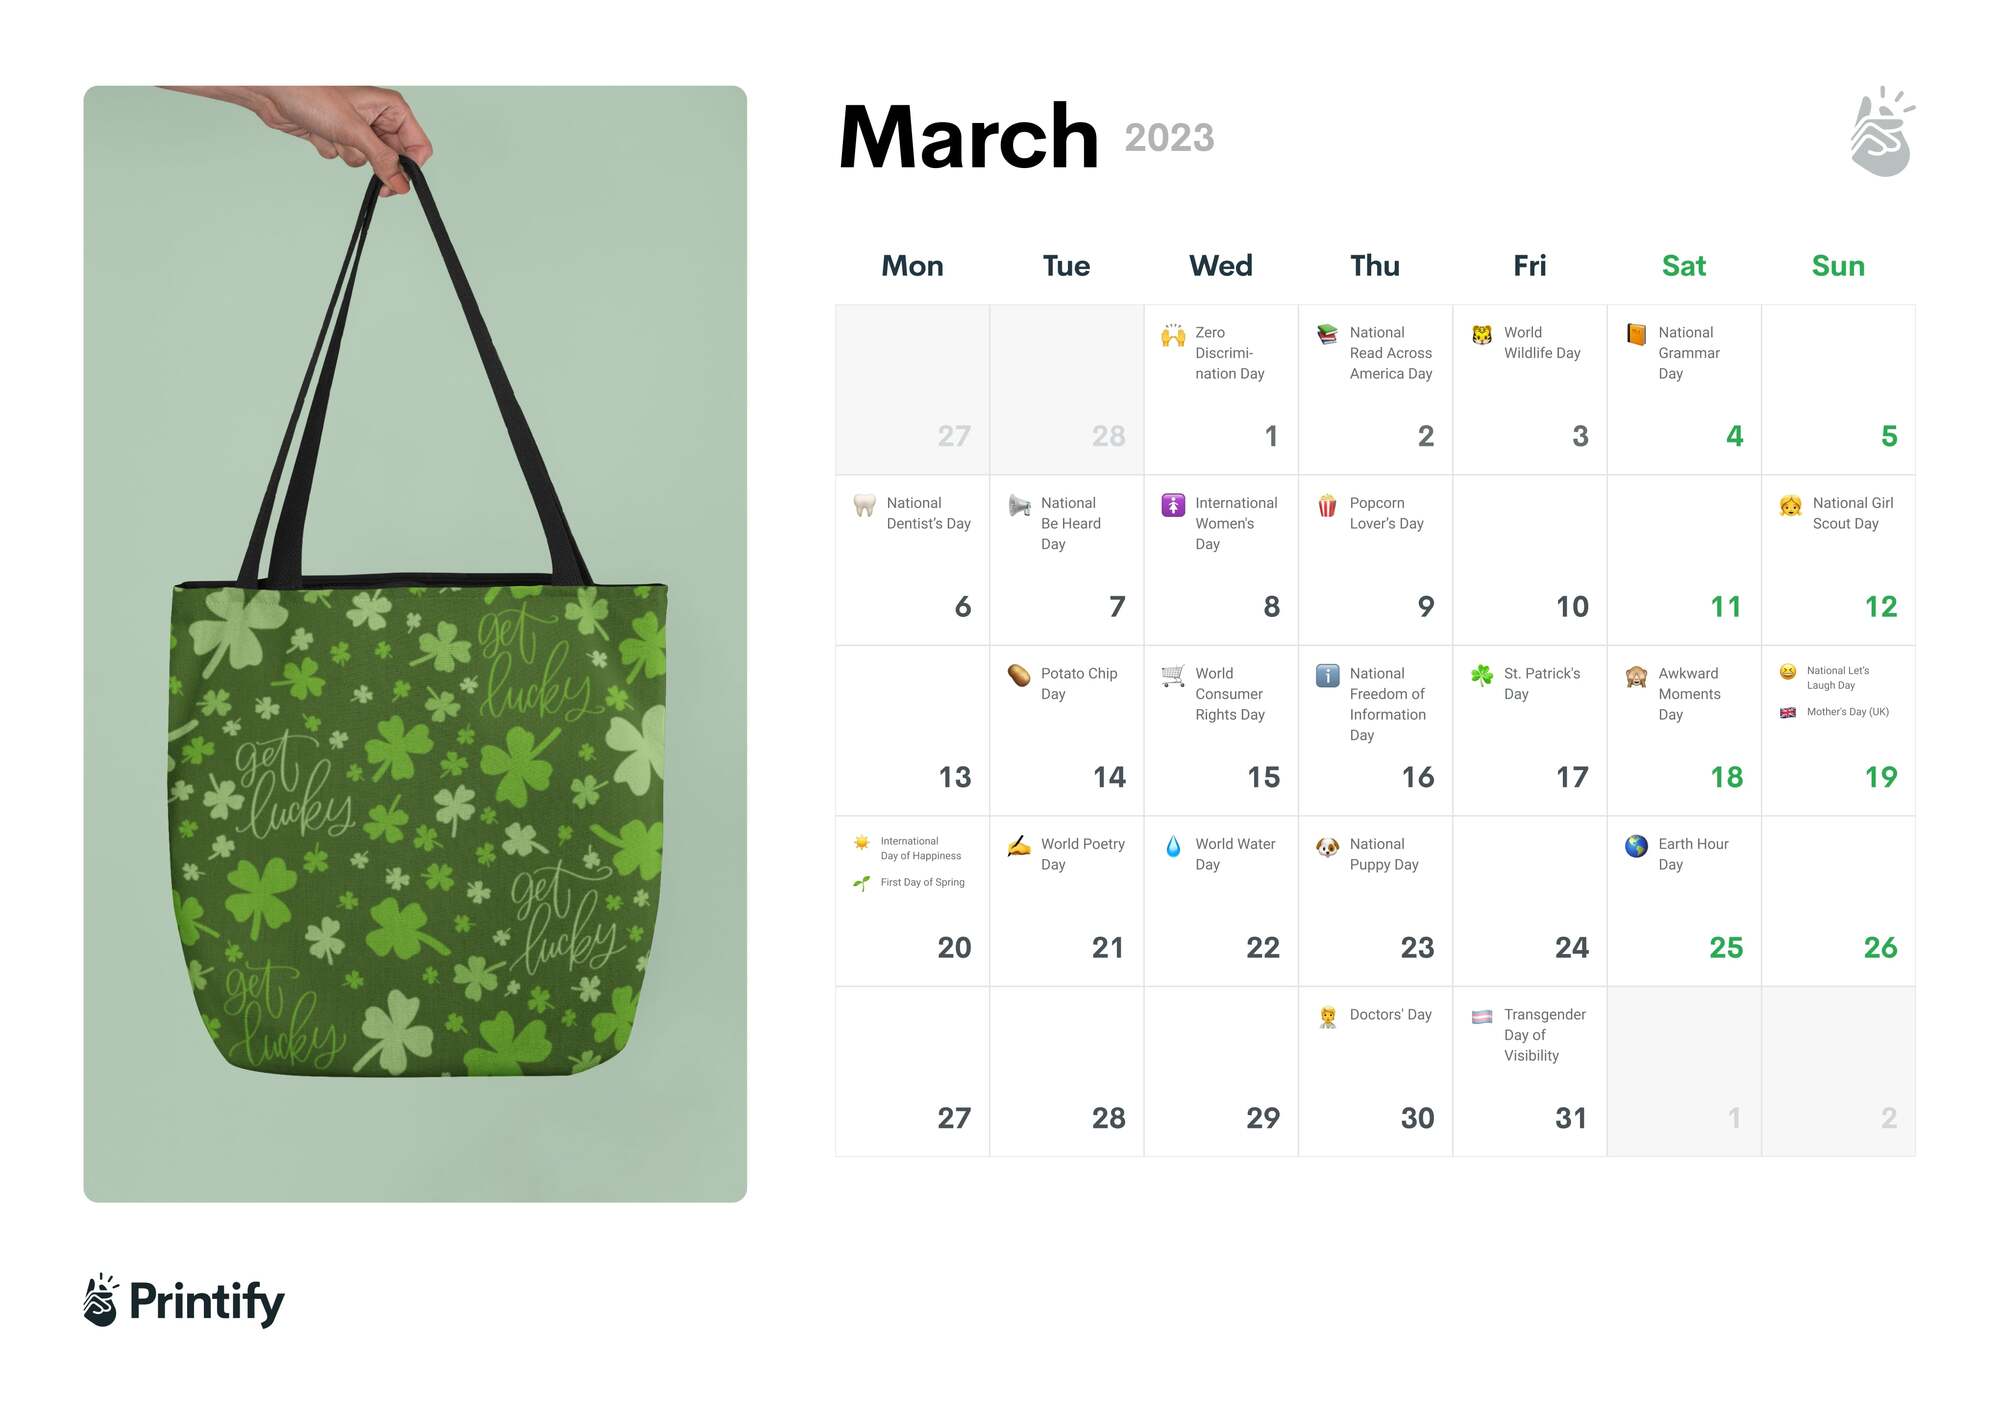 Marketing Calendar 2022 - March